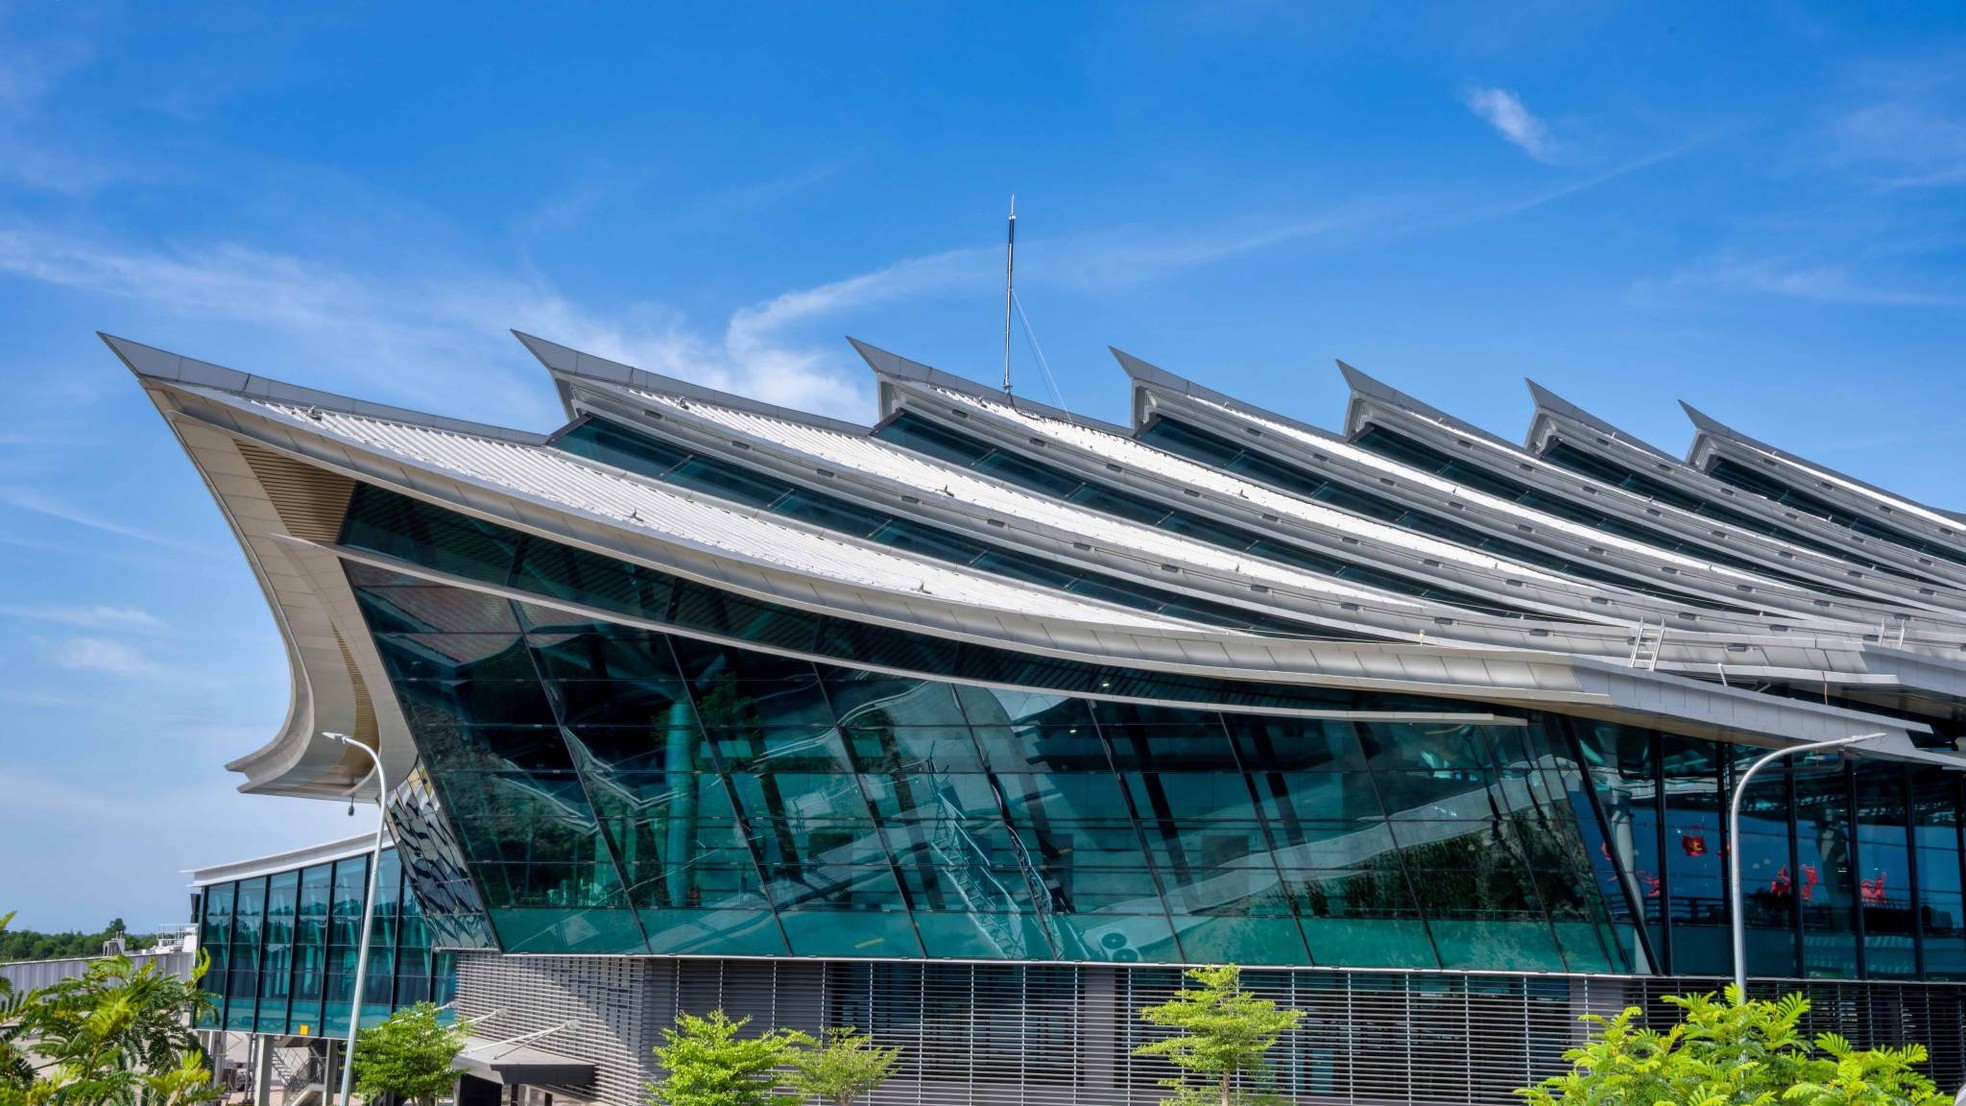 Ấn tượng hình ảnh kiến trúc sân bay 'độc nhất vô nhị' ở Việt Nam - Ảnh 5.